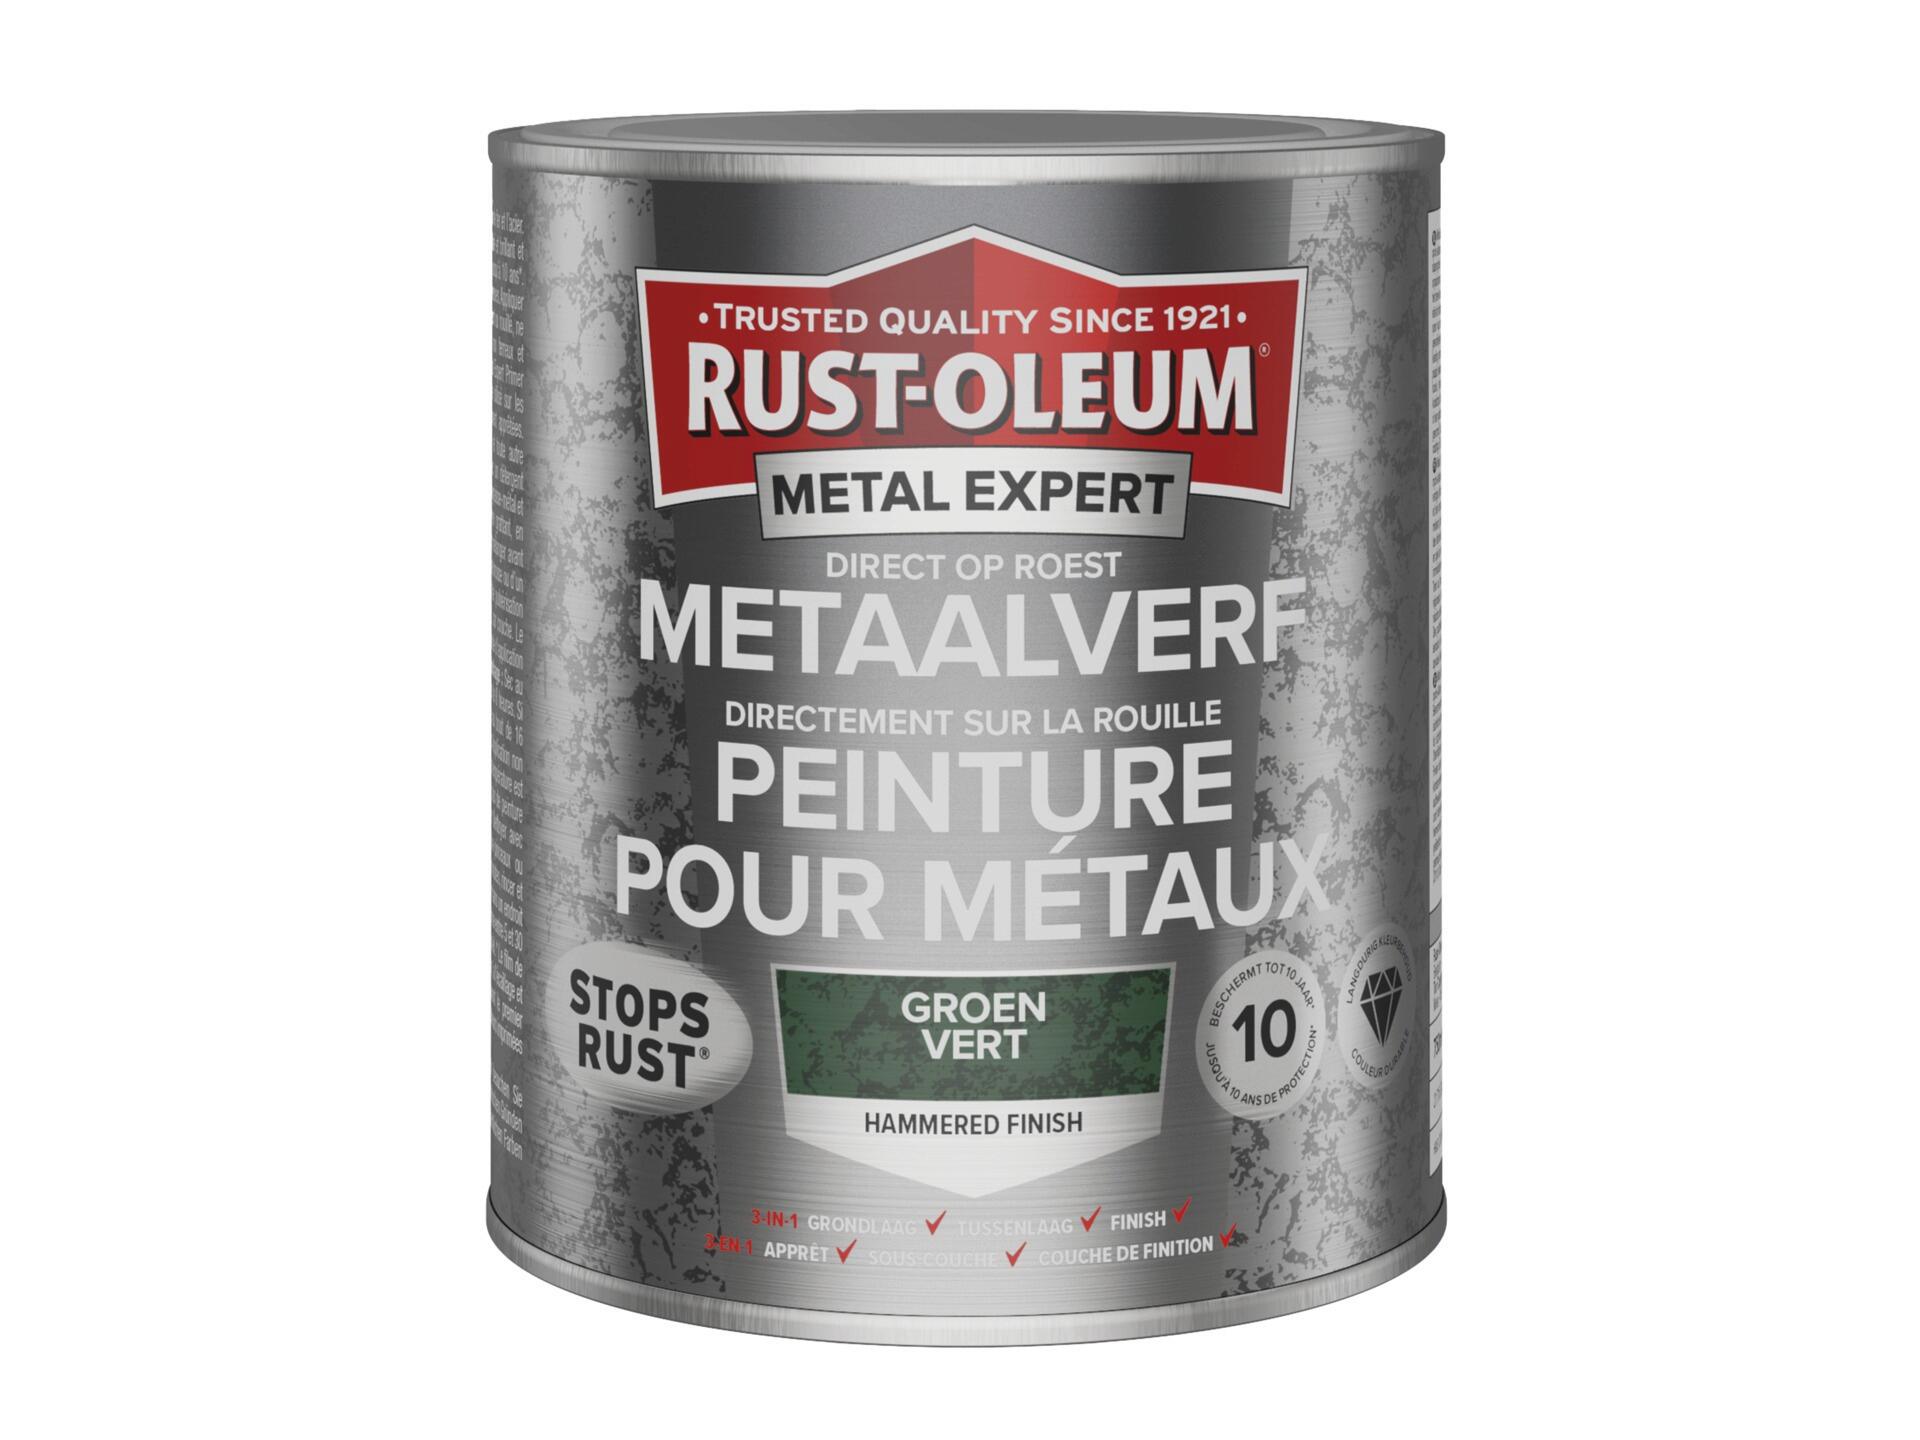 Rust-oleum Metal Expert peinture pour métaux martelé 750ml vert